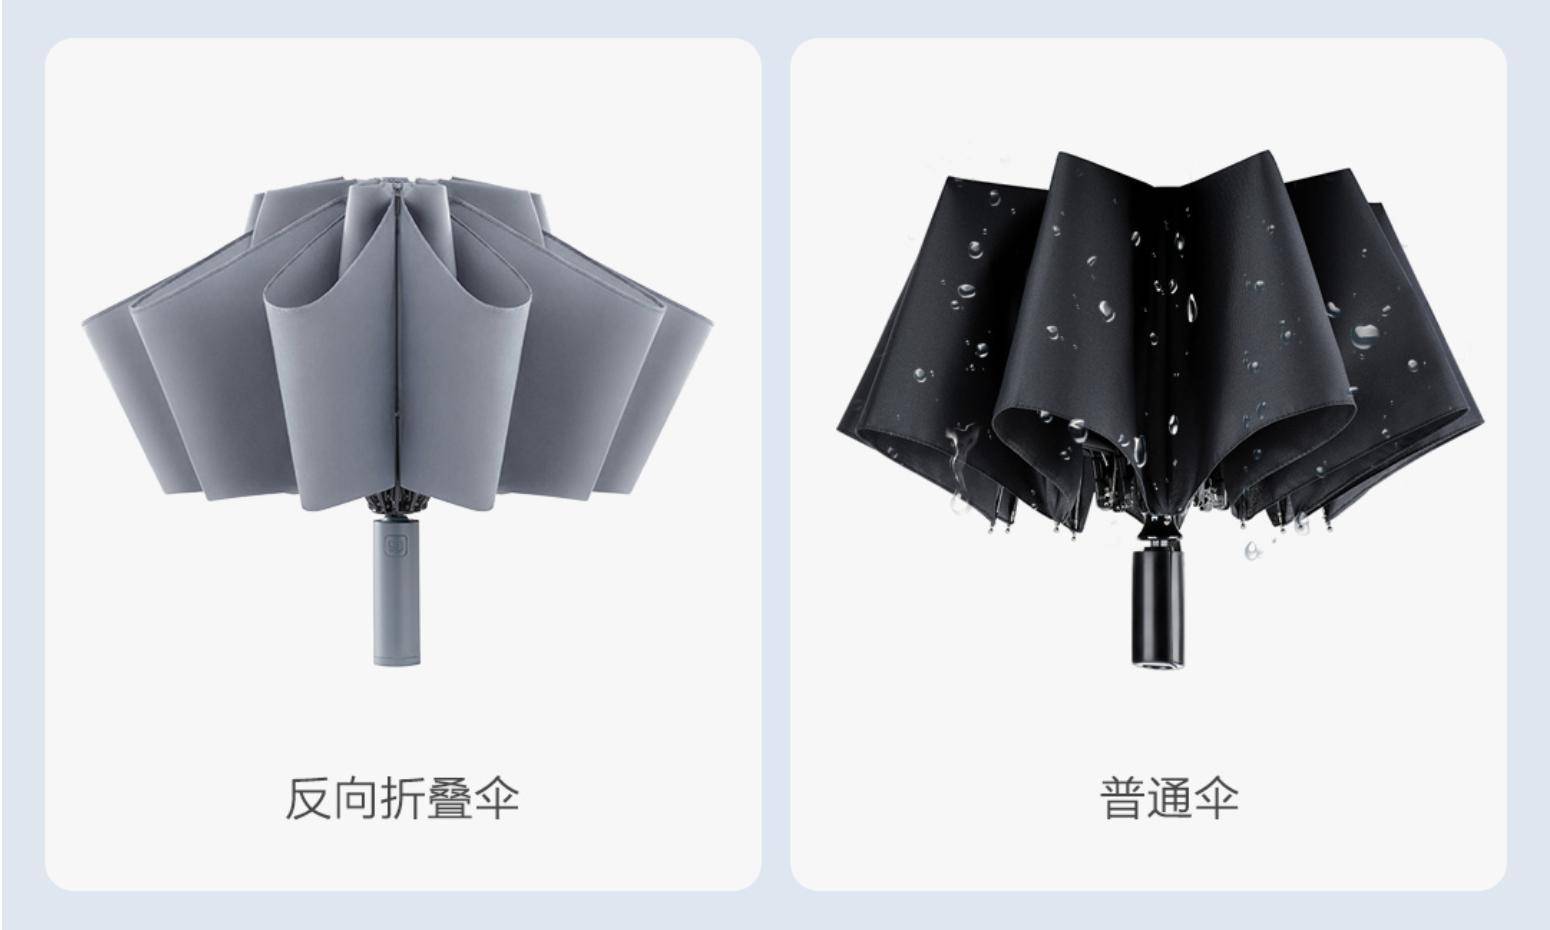 小米有品众筹自动反向折叠伞:晴雨两用 配备照明灯